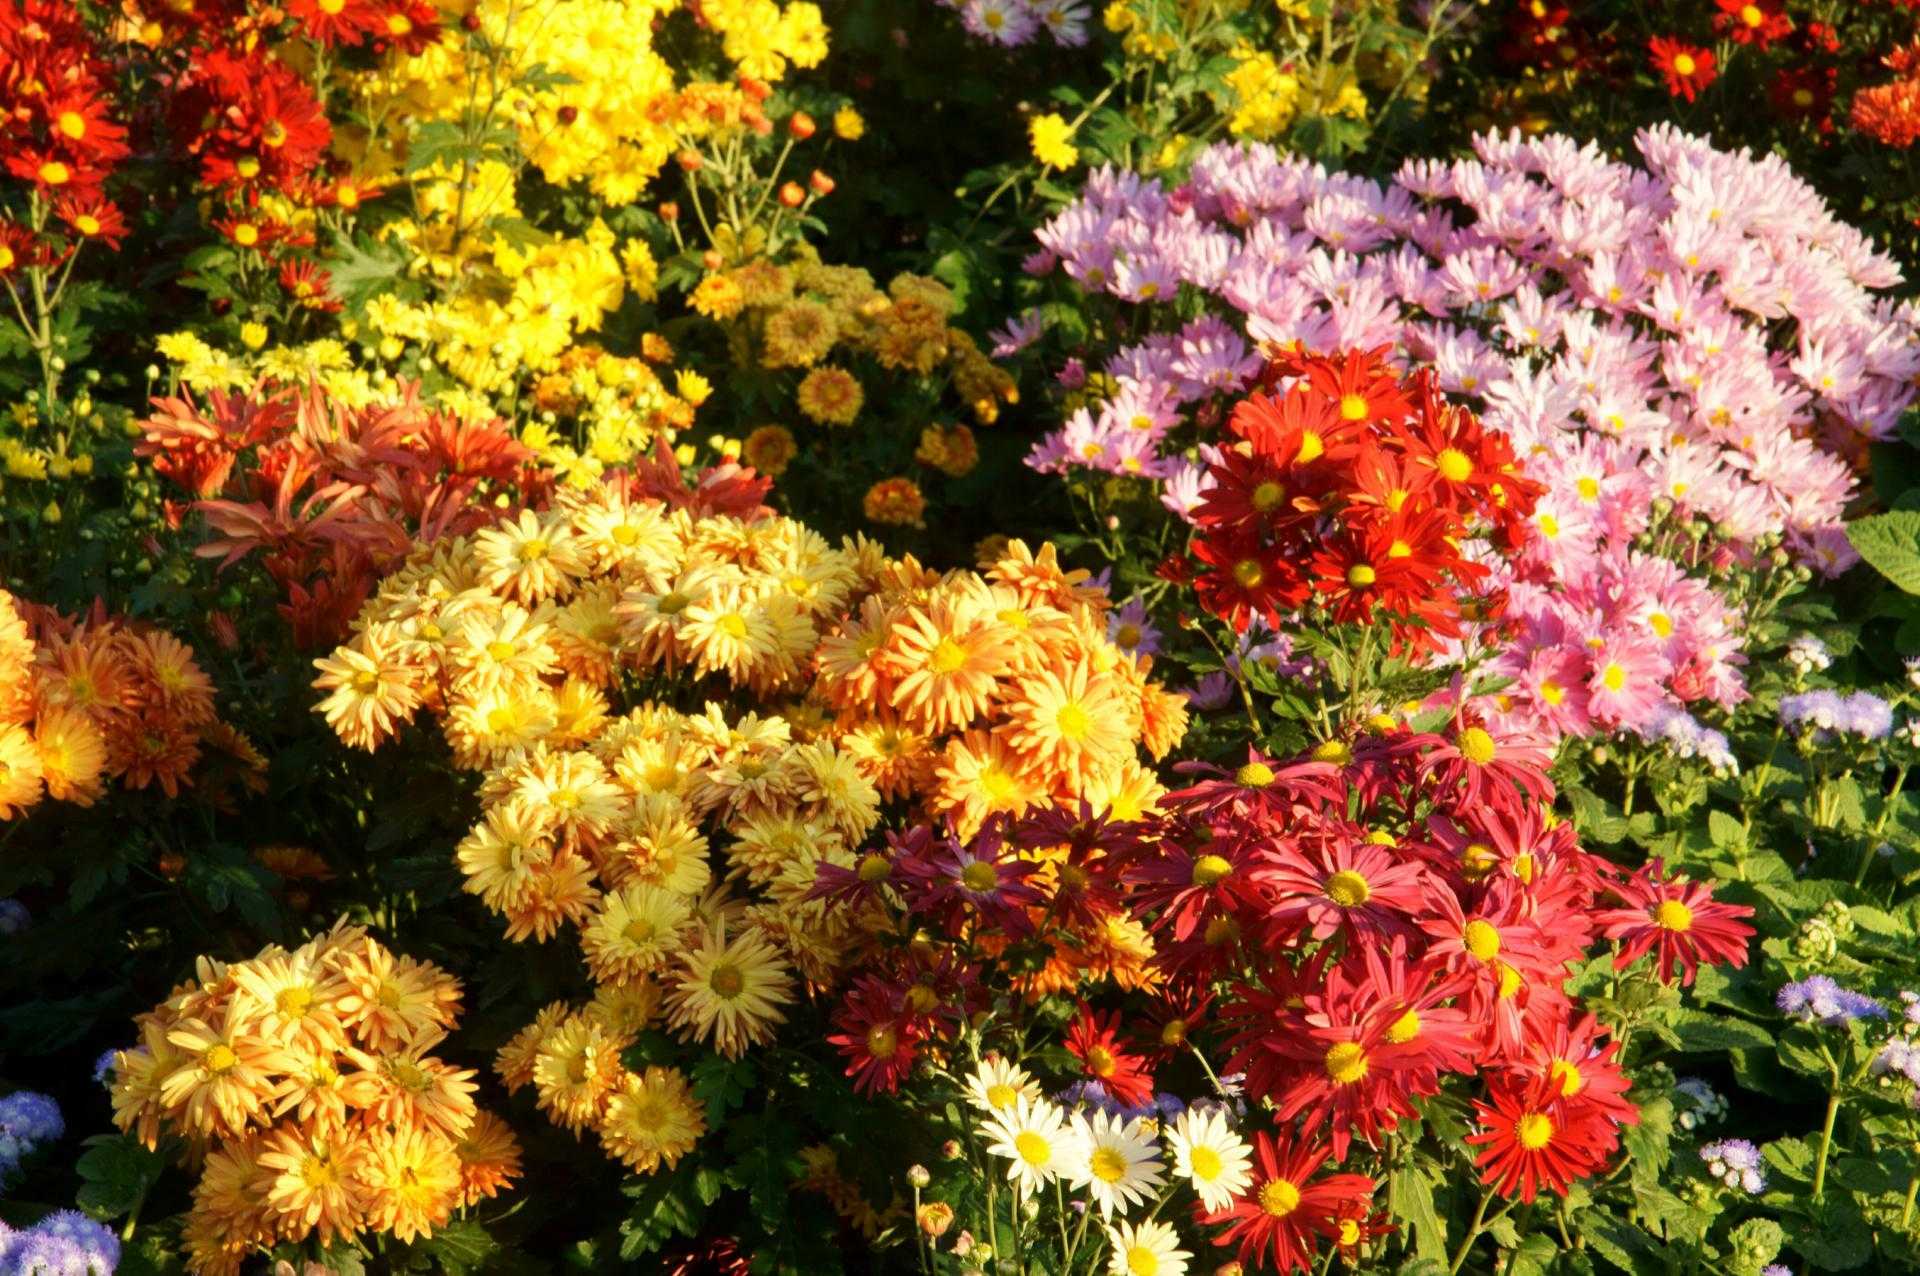 Агростемма, хризантема, иберис и другие яркие и неприхотливые цветы, которые будут украшать сад осенью и продержатся до первых холодов